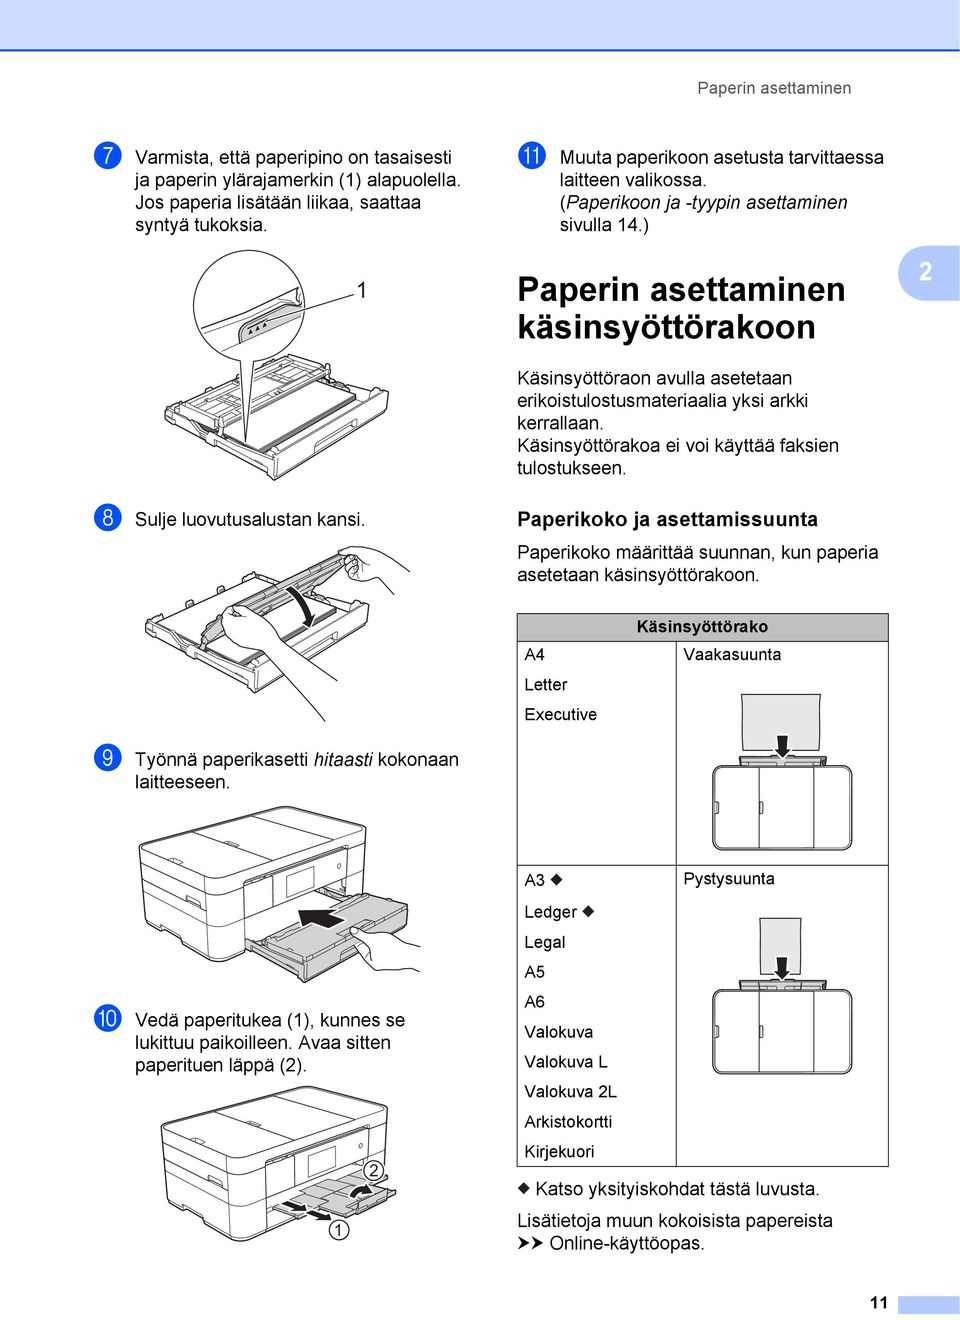 ) Paperin asettaminen käsinsyöttörakoon 2 Käsinsyöttöraon avulla asetetaan erikoistulostusmateriaalia yksi arkki kerrallaan. Käsinsyöttörakoa ei voi käyttää faksien tulostukseen.